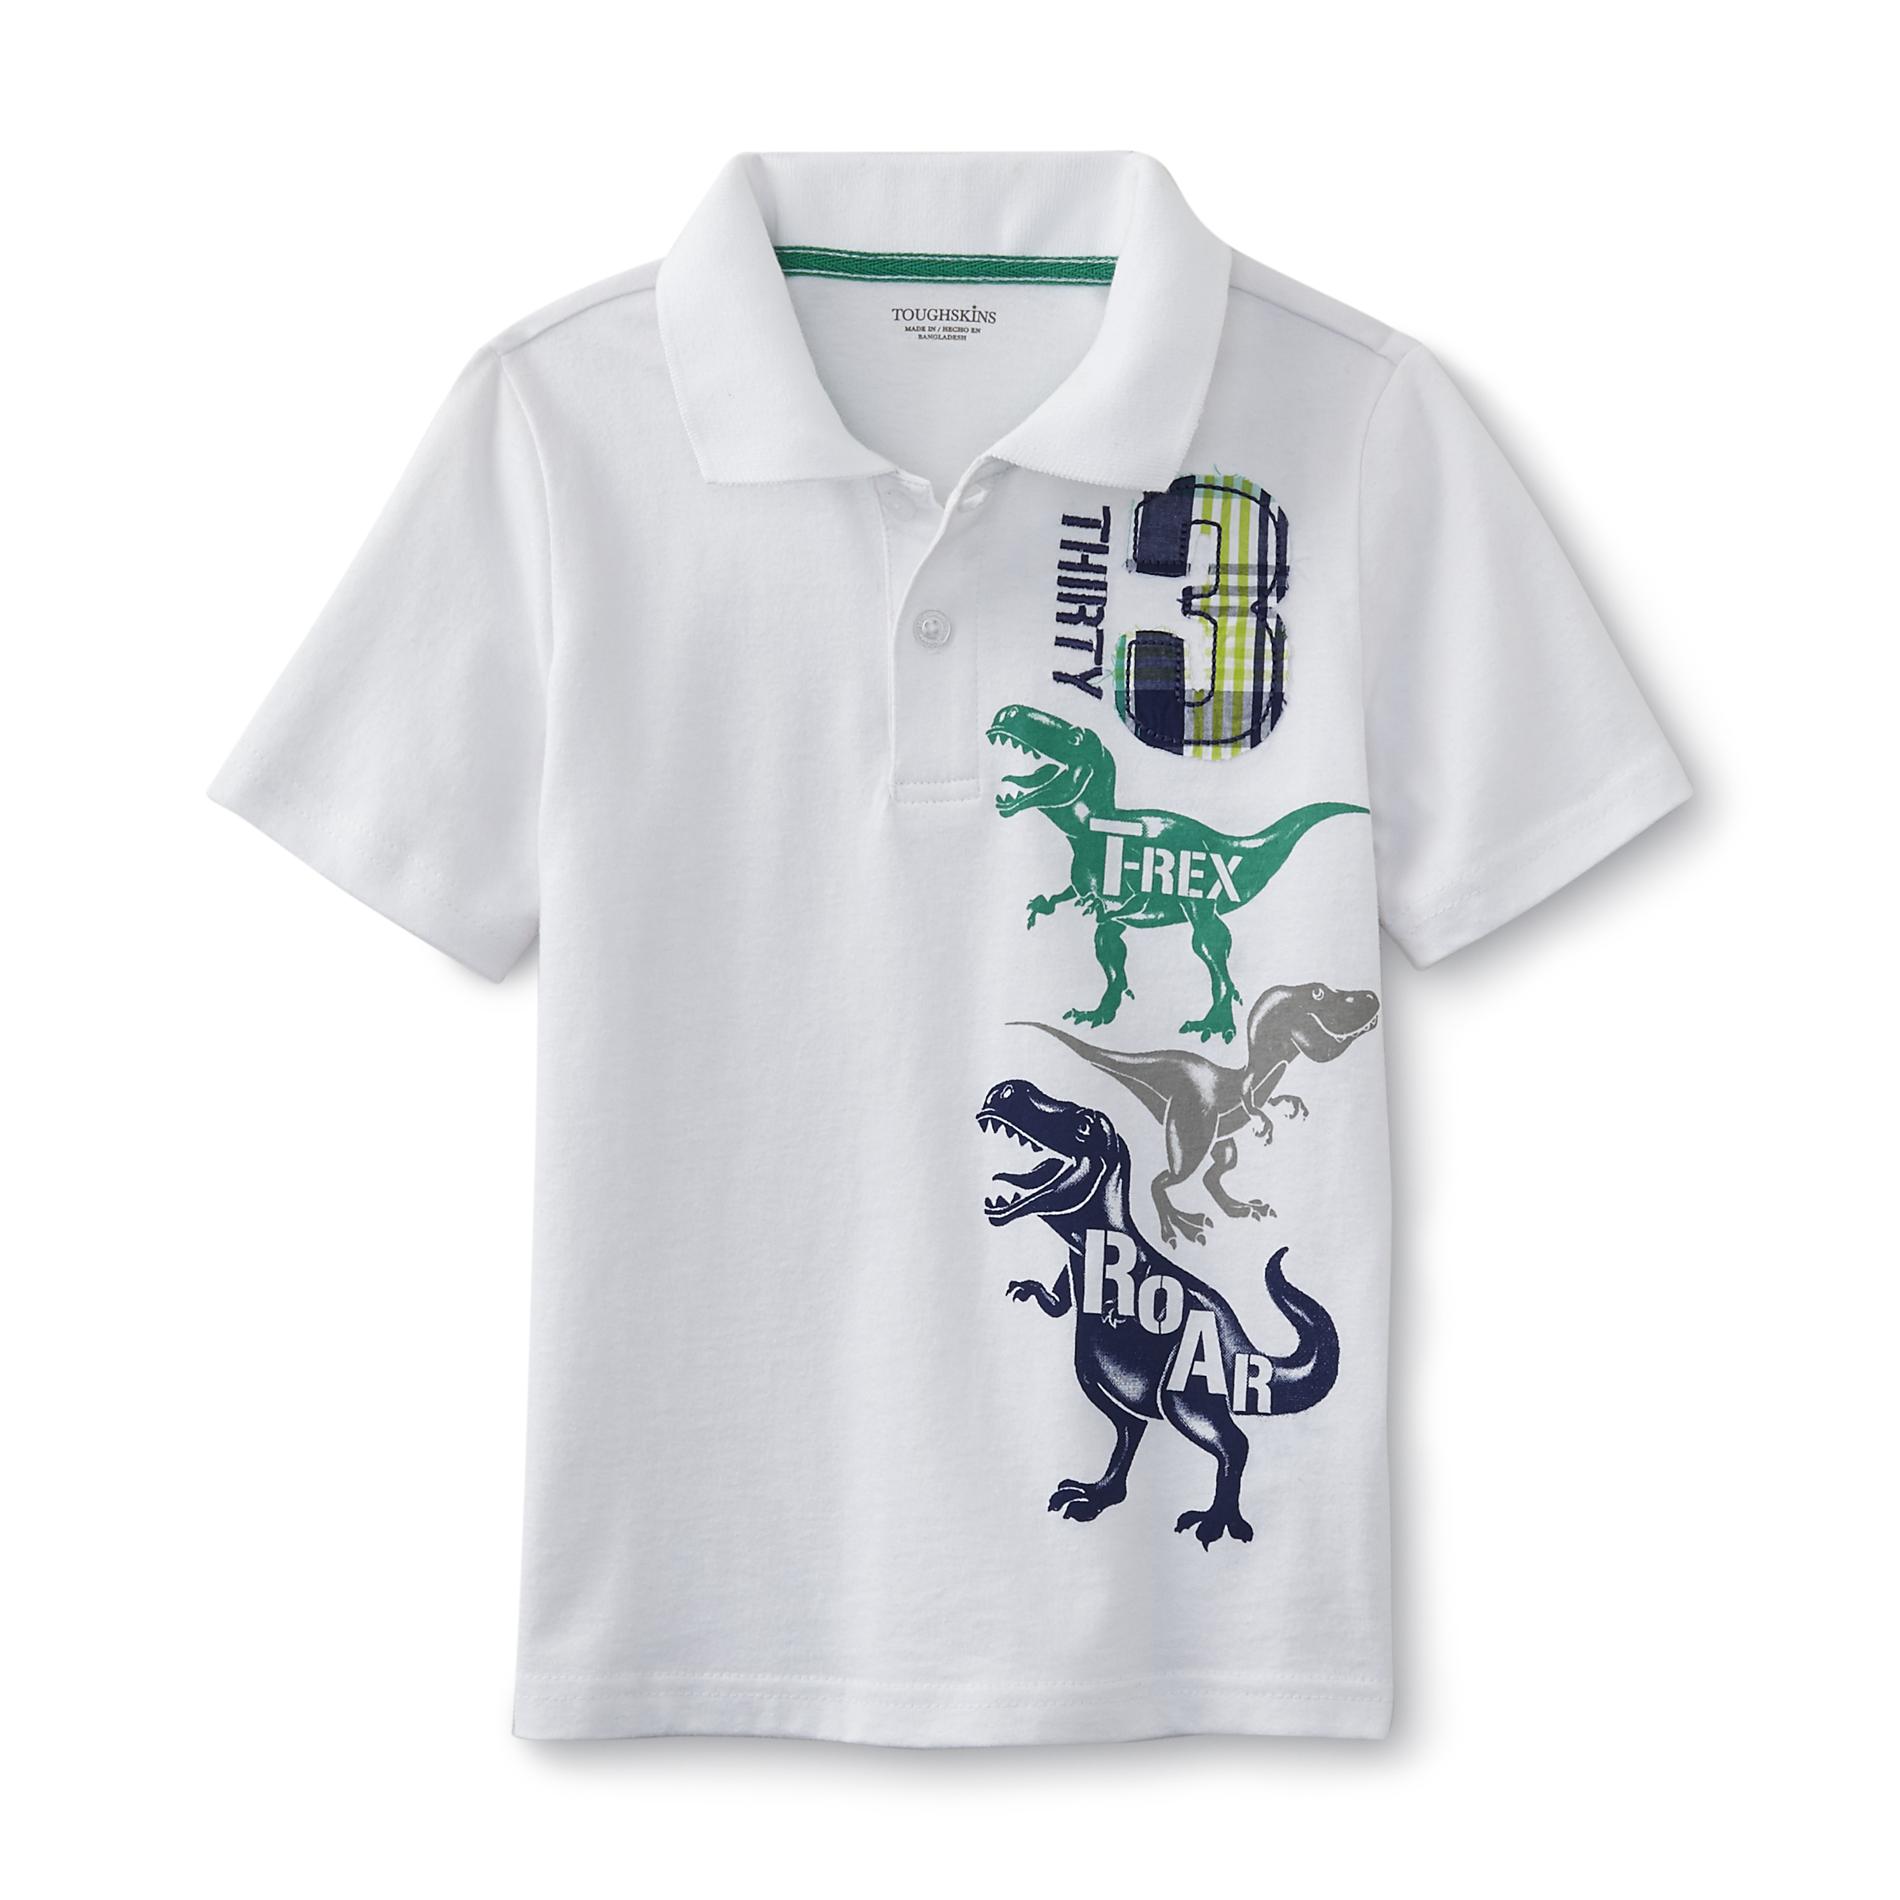 Toughskins Infant & Toddler Boy's Polo Shirt - T.rex